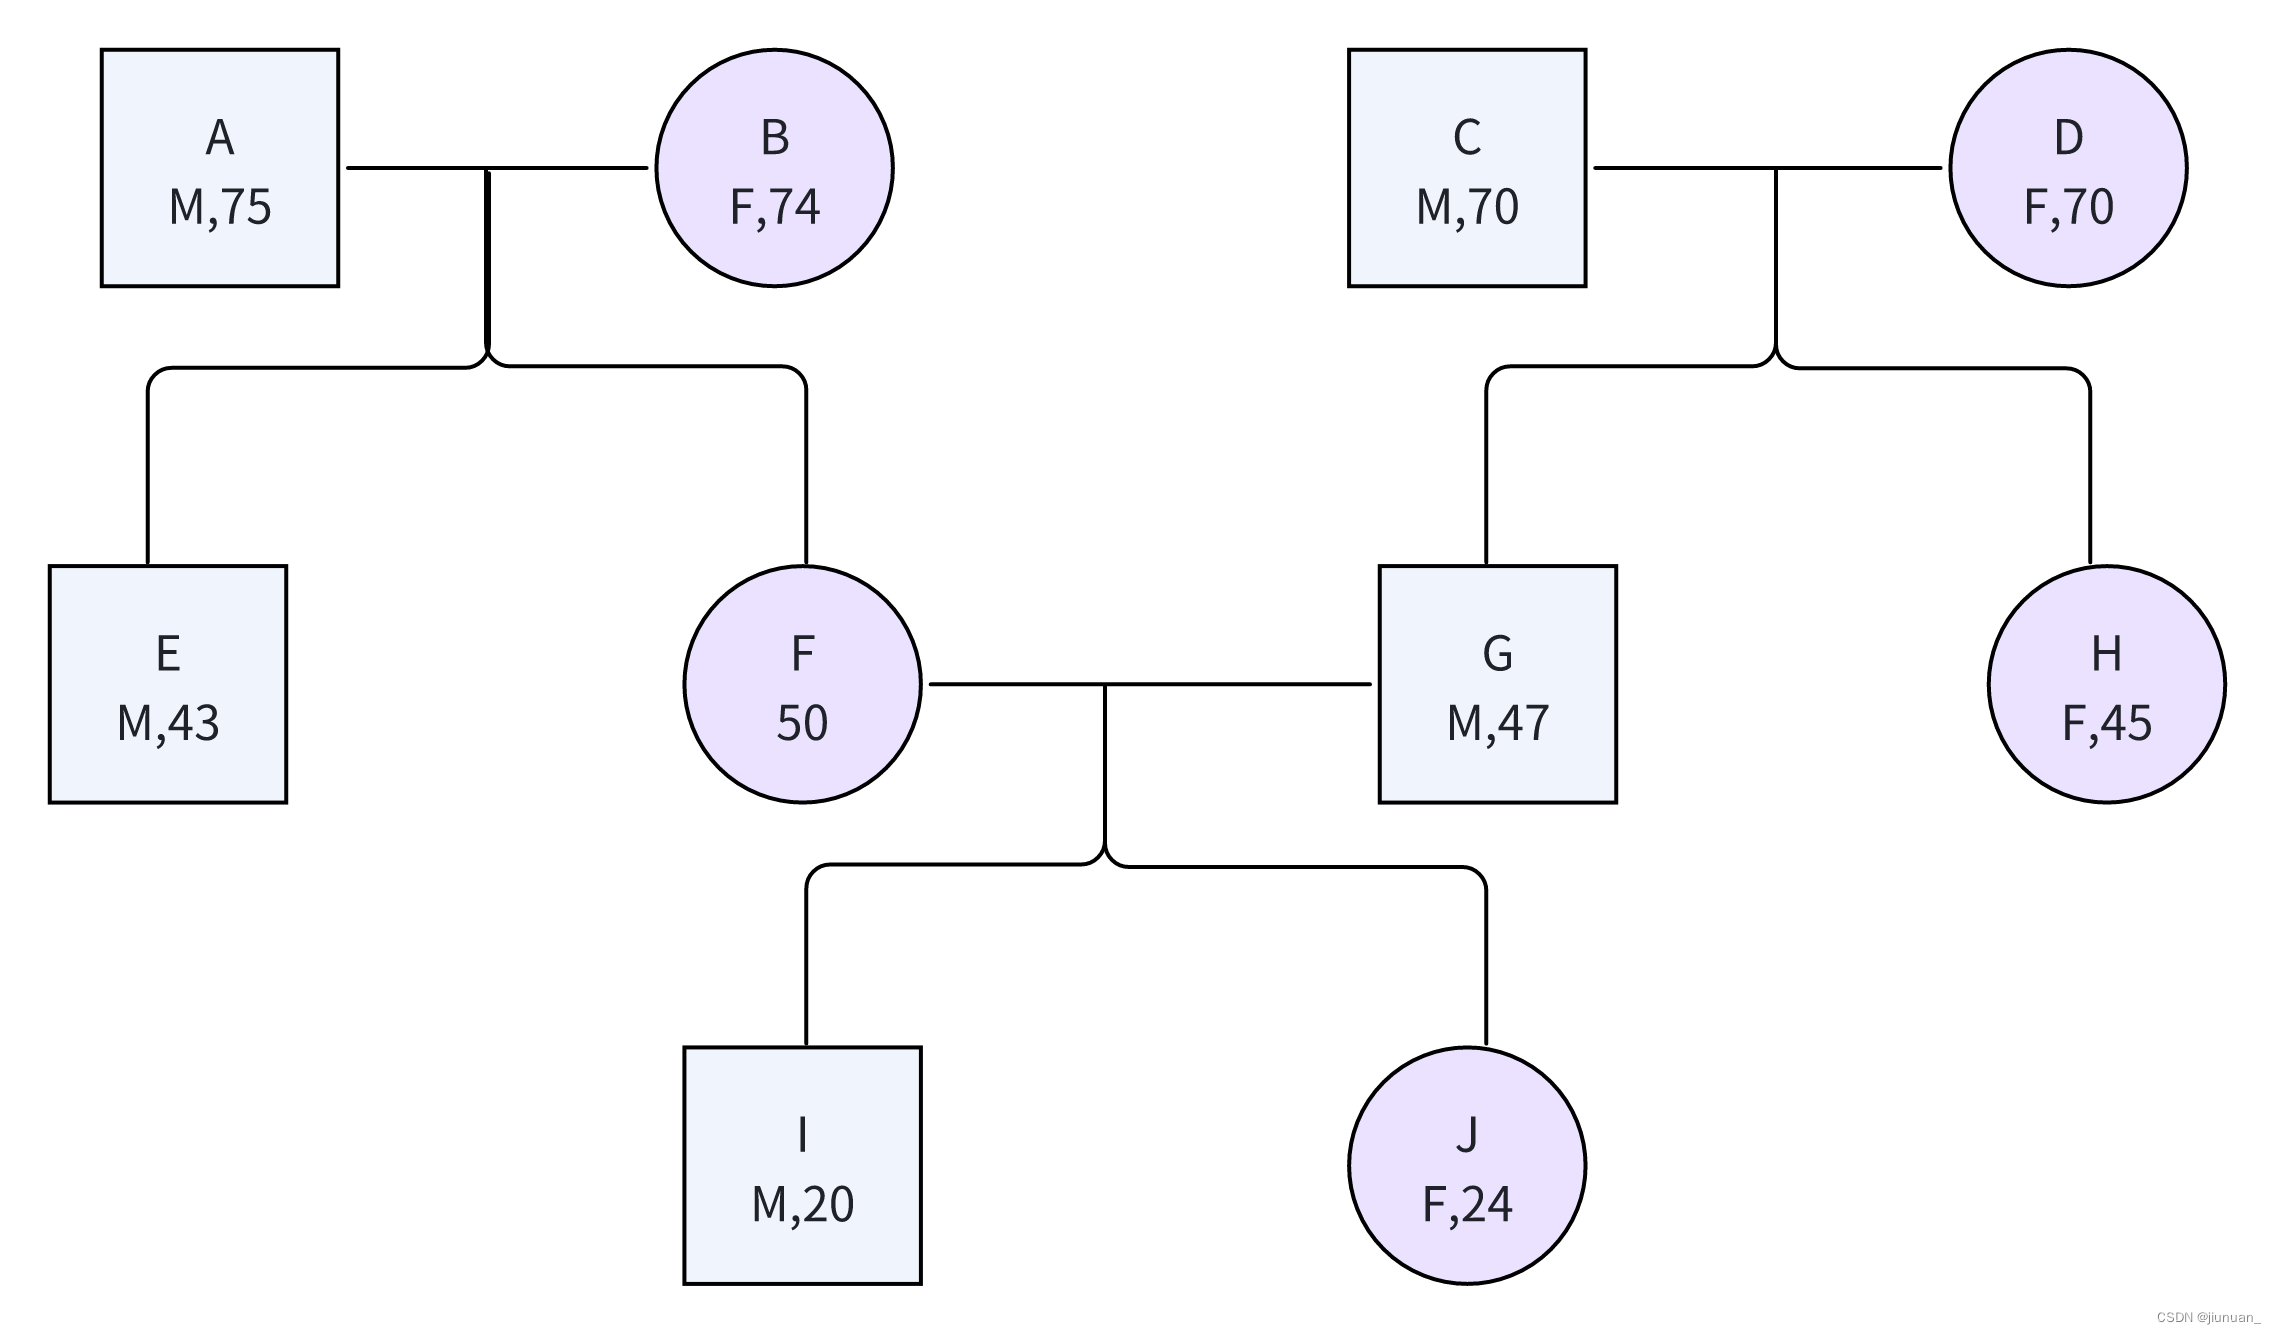 一个简单的家谱树，包含姓名、性别、年龄